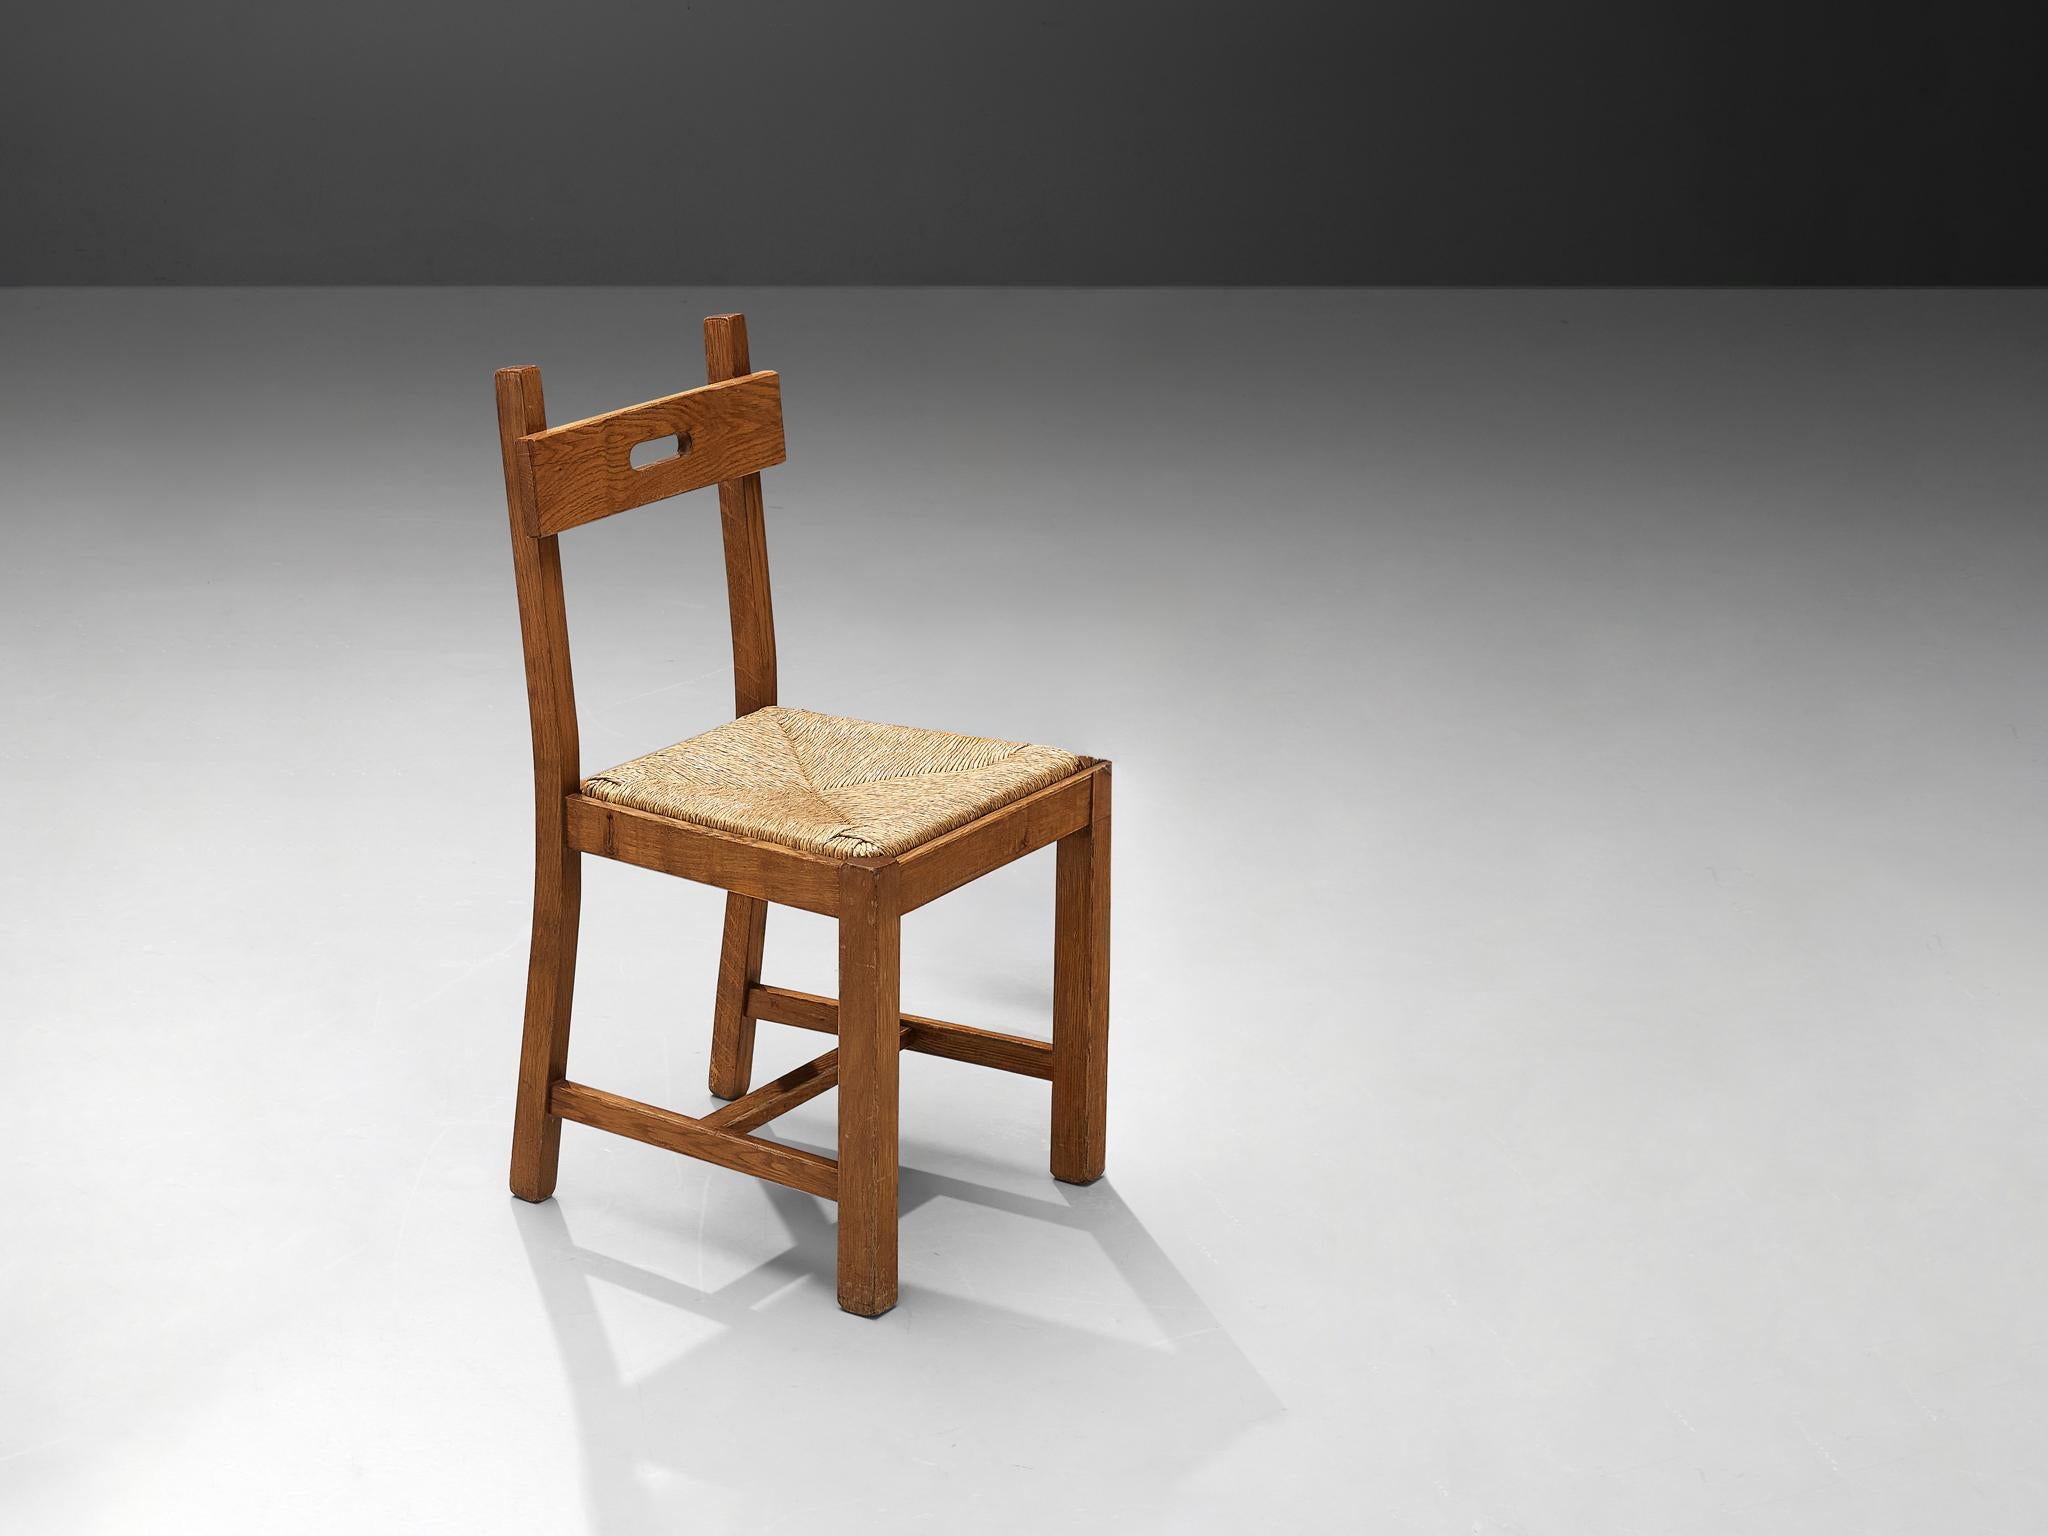 Chaises de salle à manger, chêne, paille, Belgique, années 1960.

Chaise de salle à manger d'aspect merveilleusement naturaliste fabriquée en Belgique dans les années 1960. Cette chaise est exécutée en chêne qui a acquis une riche patine au fil du